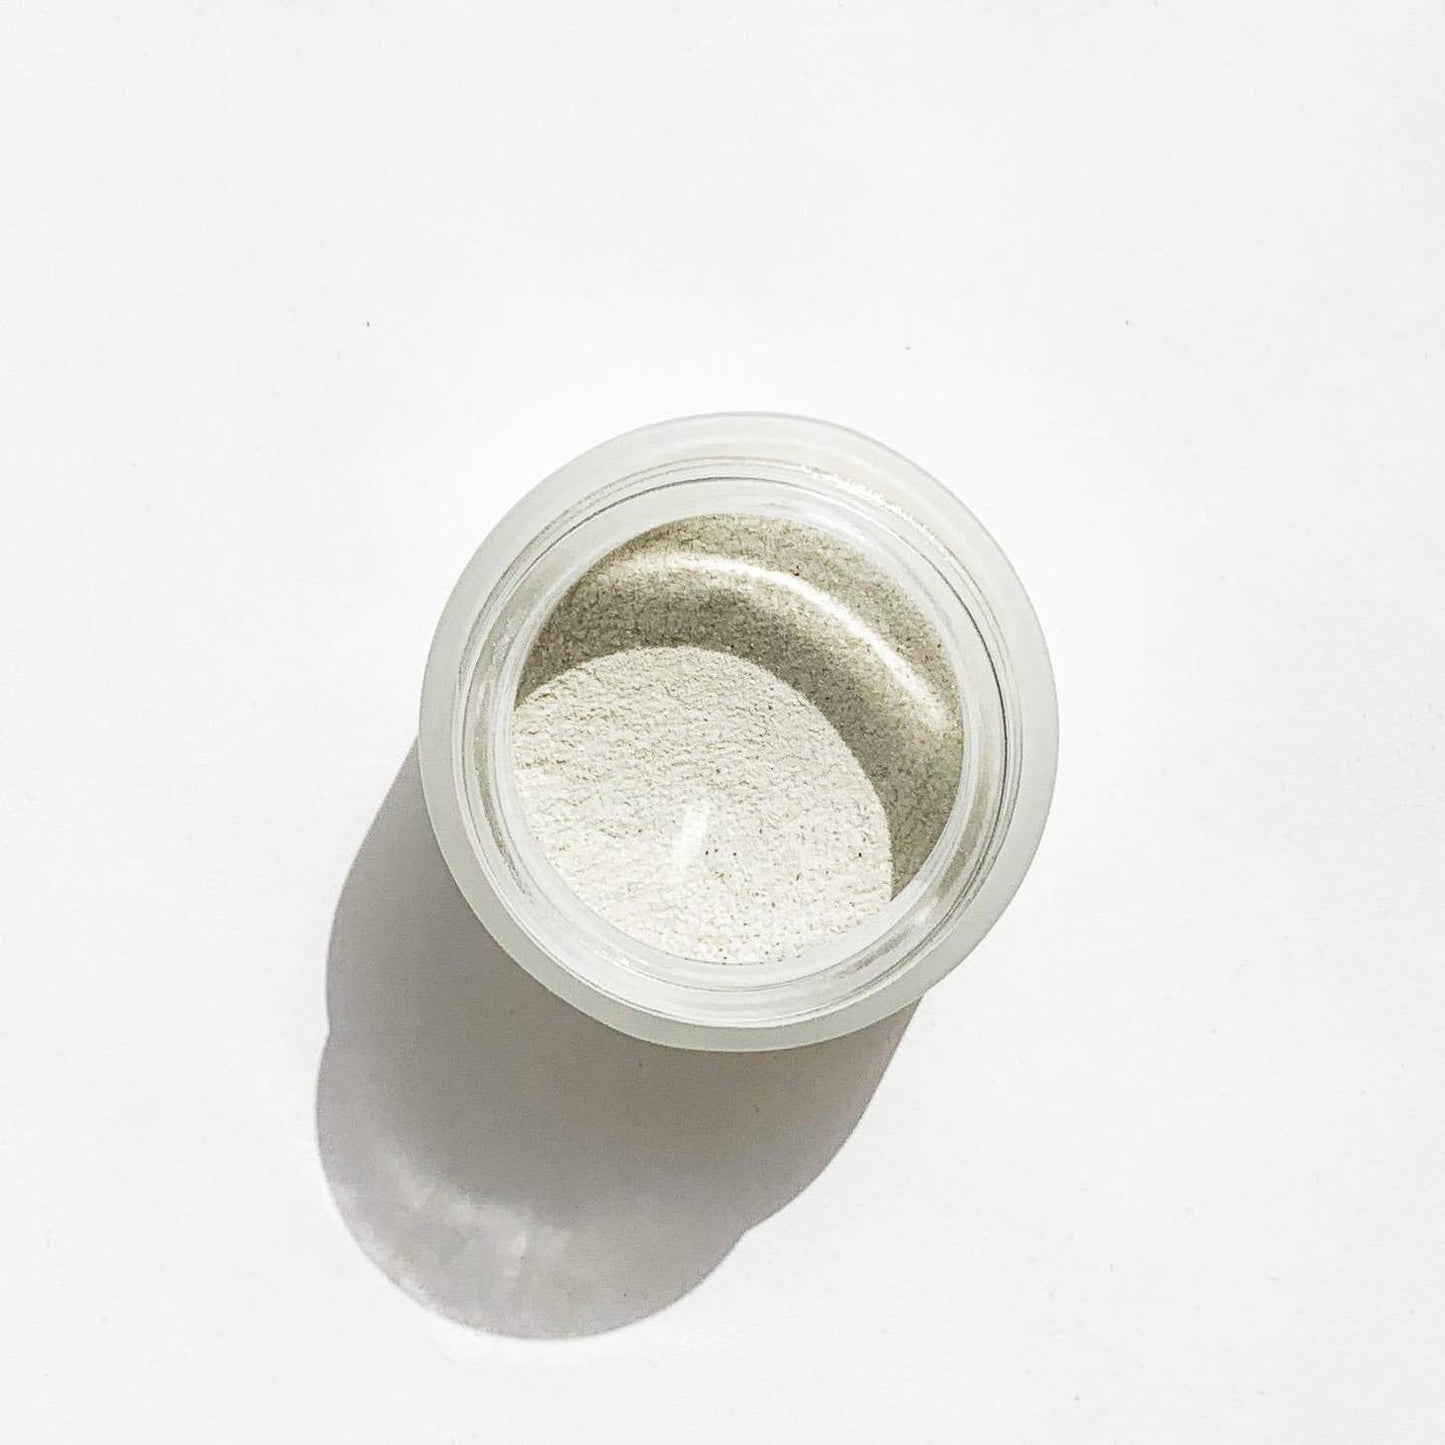 Clarifying Enzyme Powder | MODM